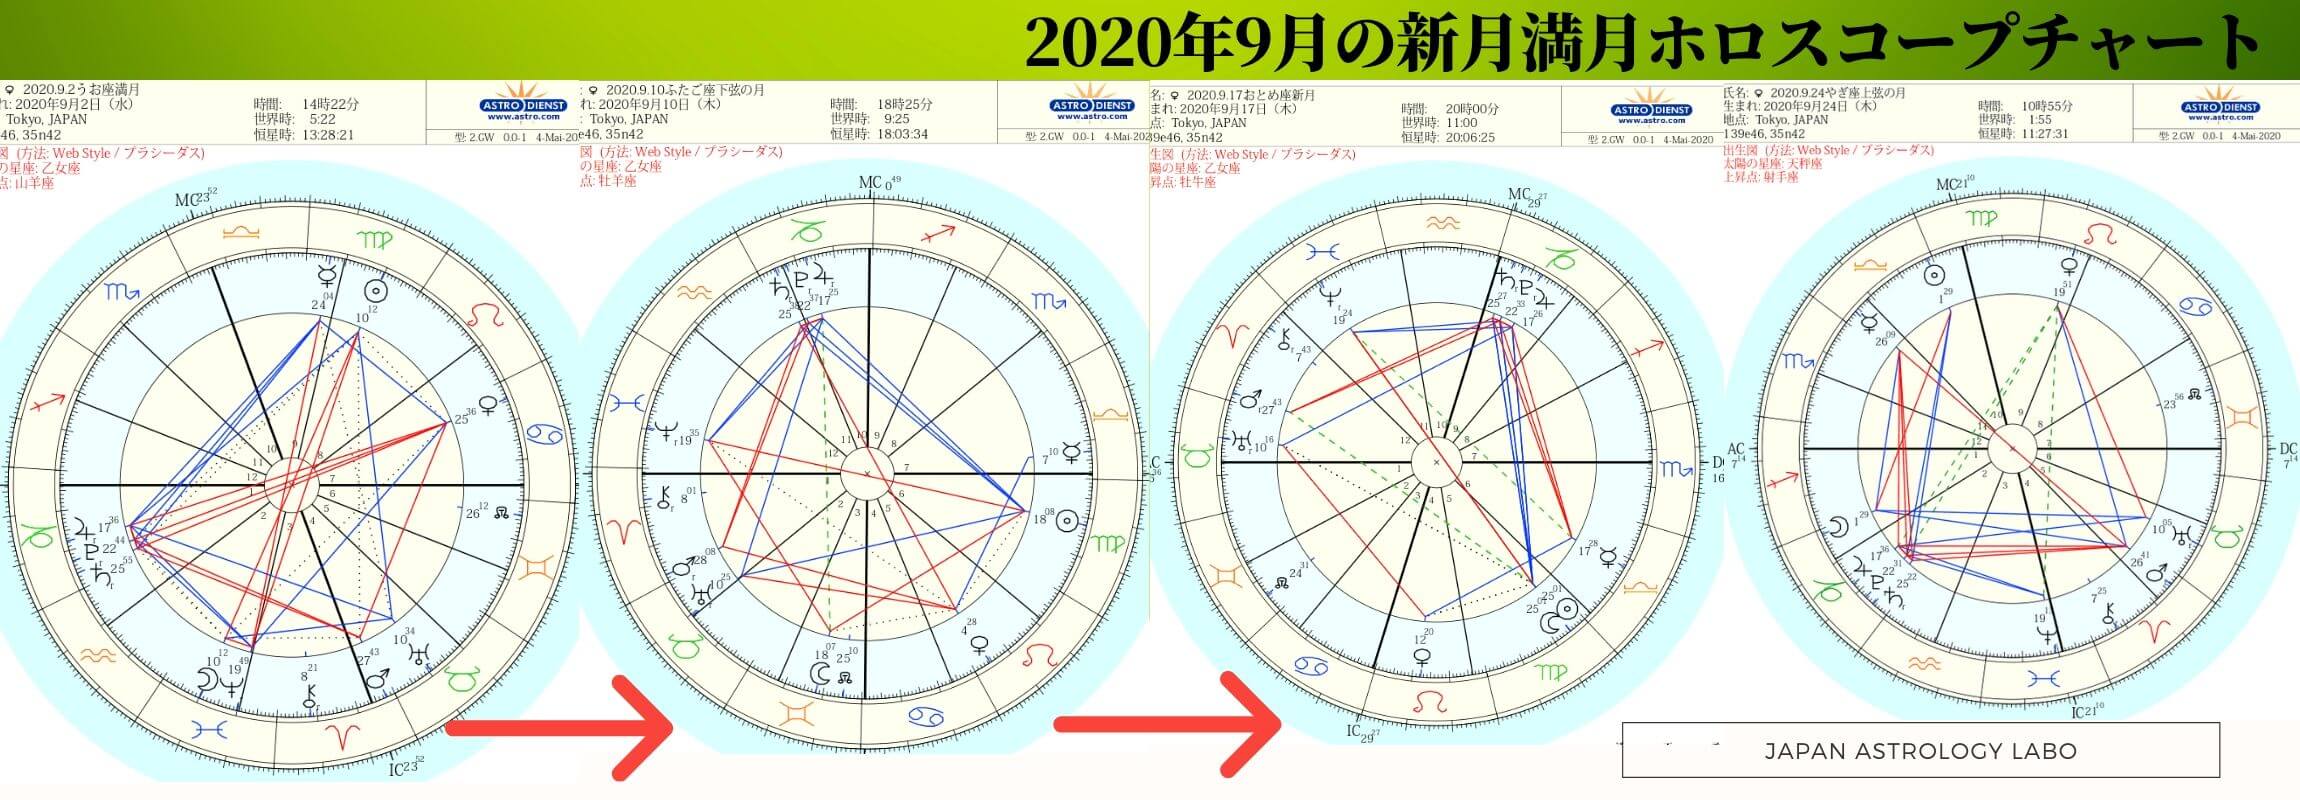 占星術の星ぞら年9月の星読み 星の動き Japanastrologylabo西洋占星術オンライン講座 公式